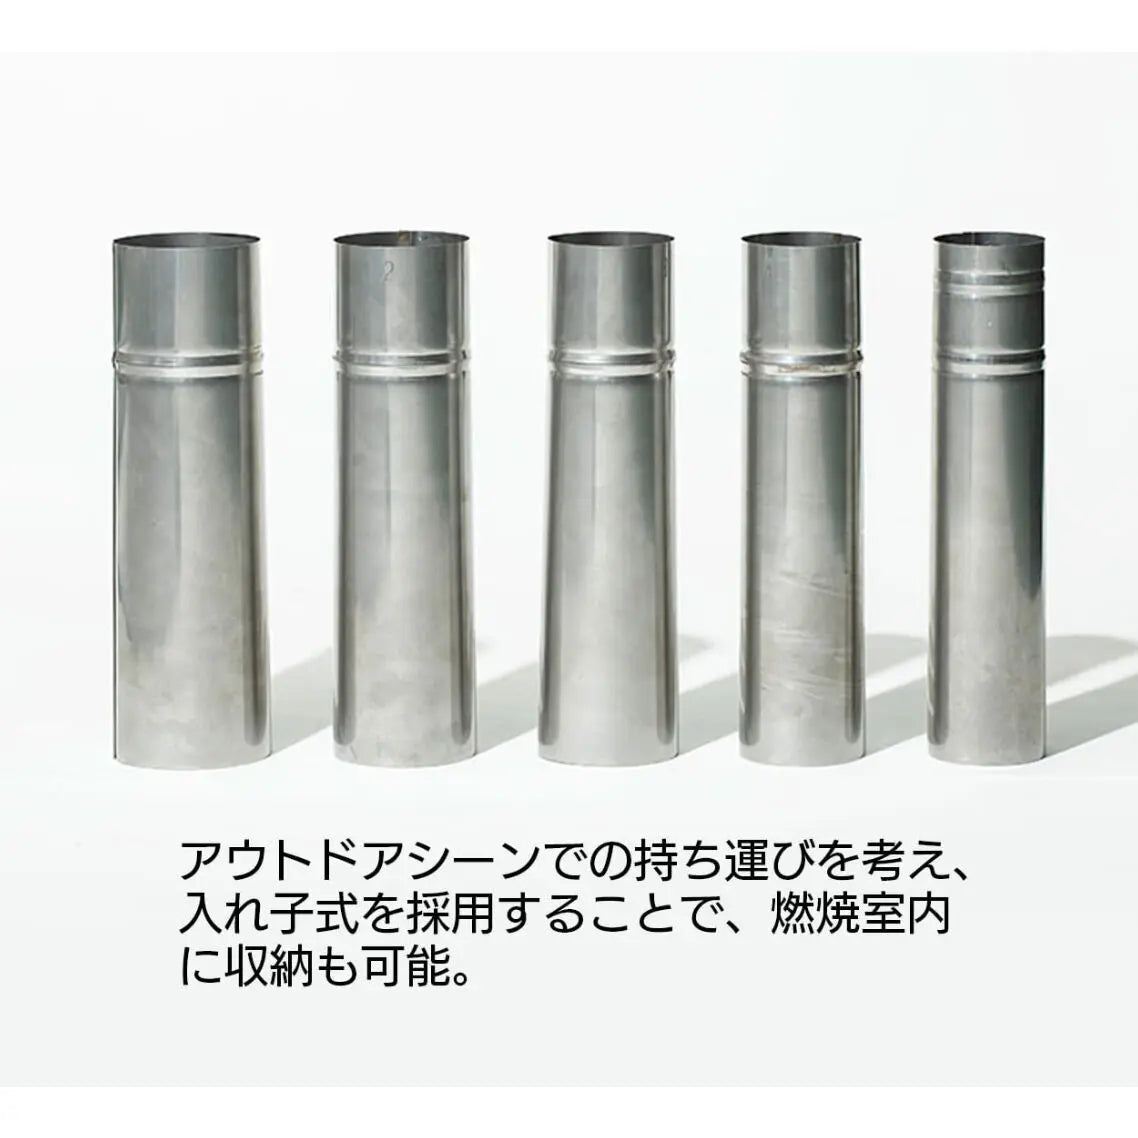 2024定番収納型トップ付き入れ子式煙突(径106mm〜80mm) バーベキュー・調理用品